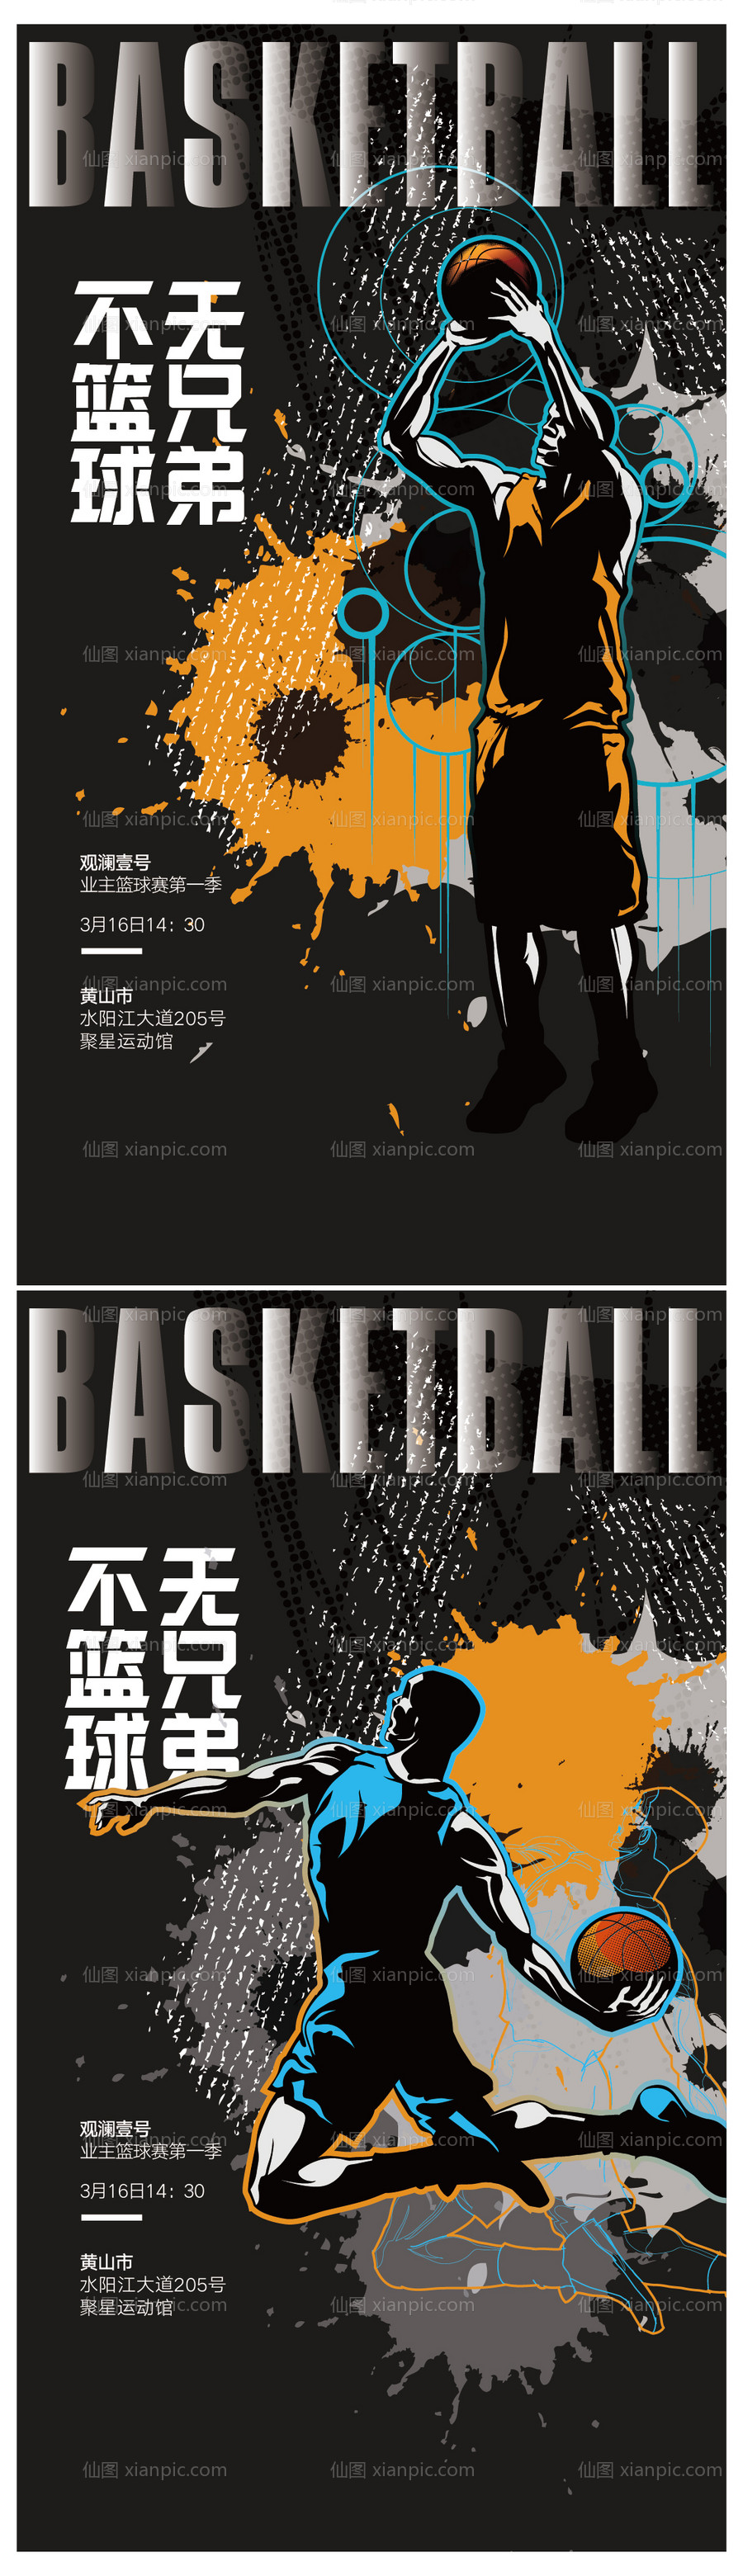 素材乐-篮球赛活动海报